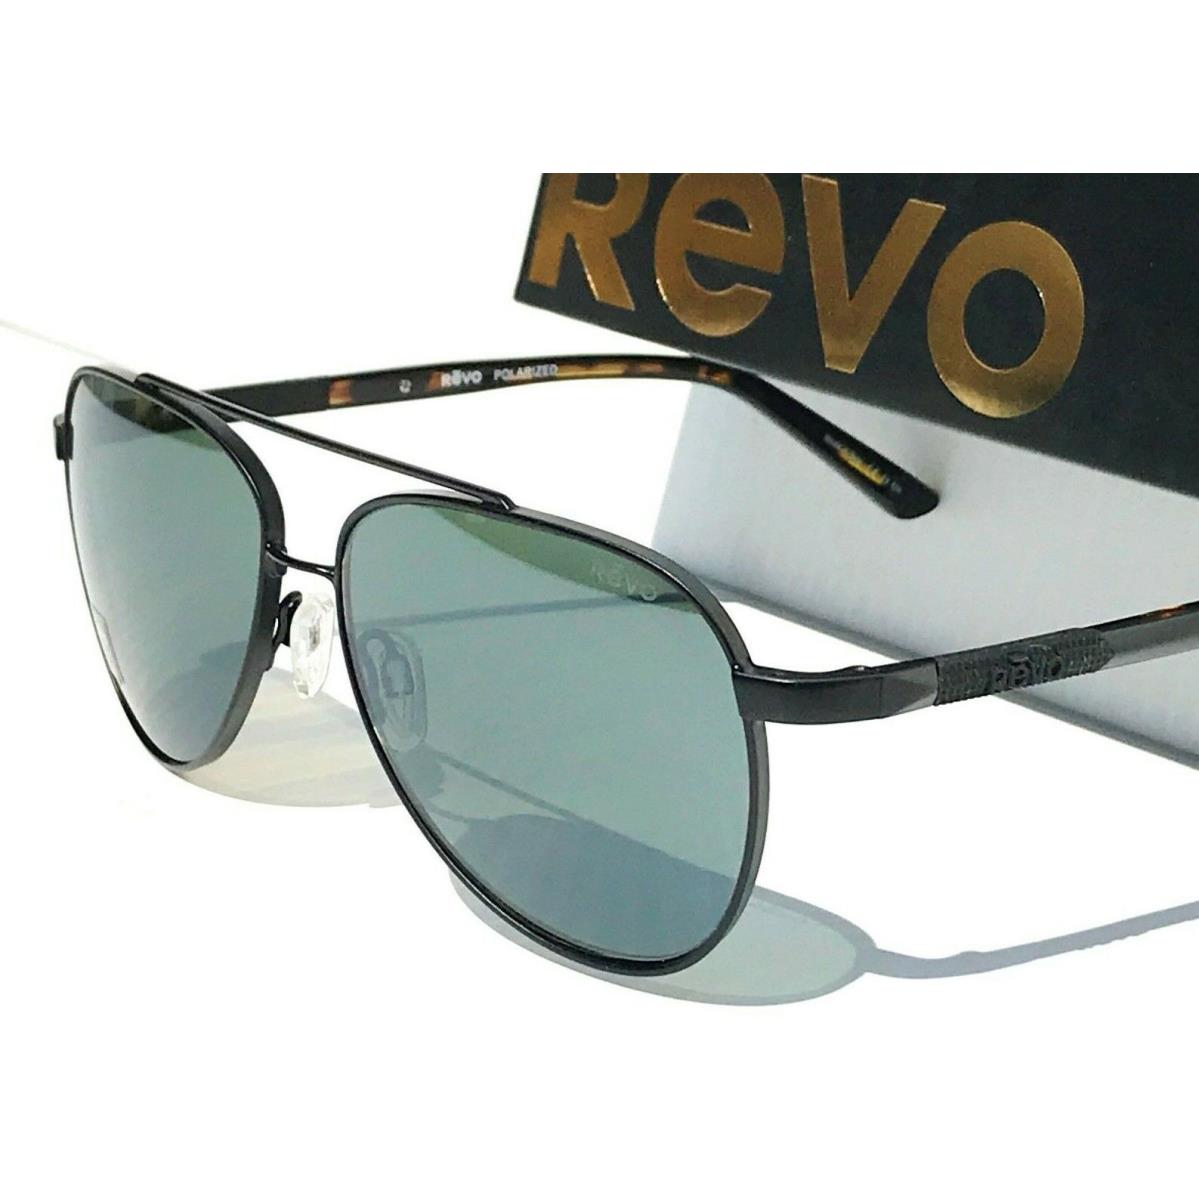 Revo sunglasses Arthur - Black Frame, Green Lens